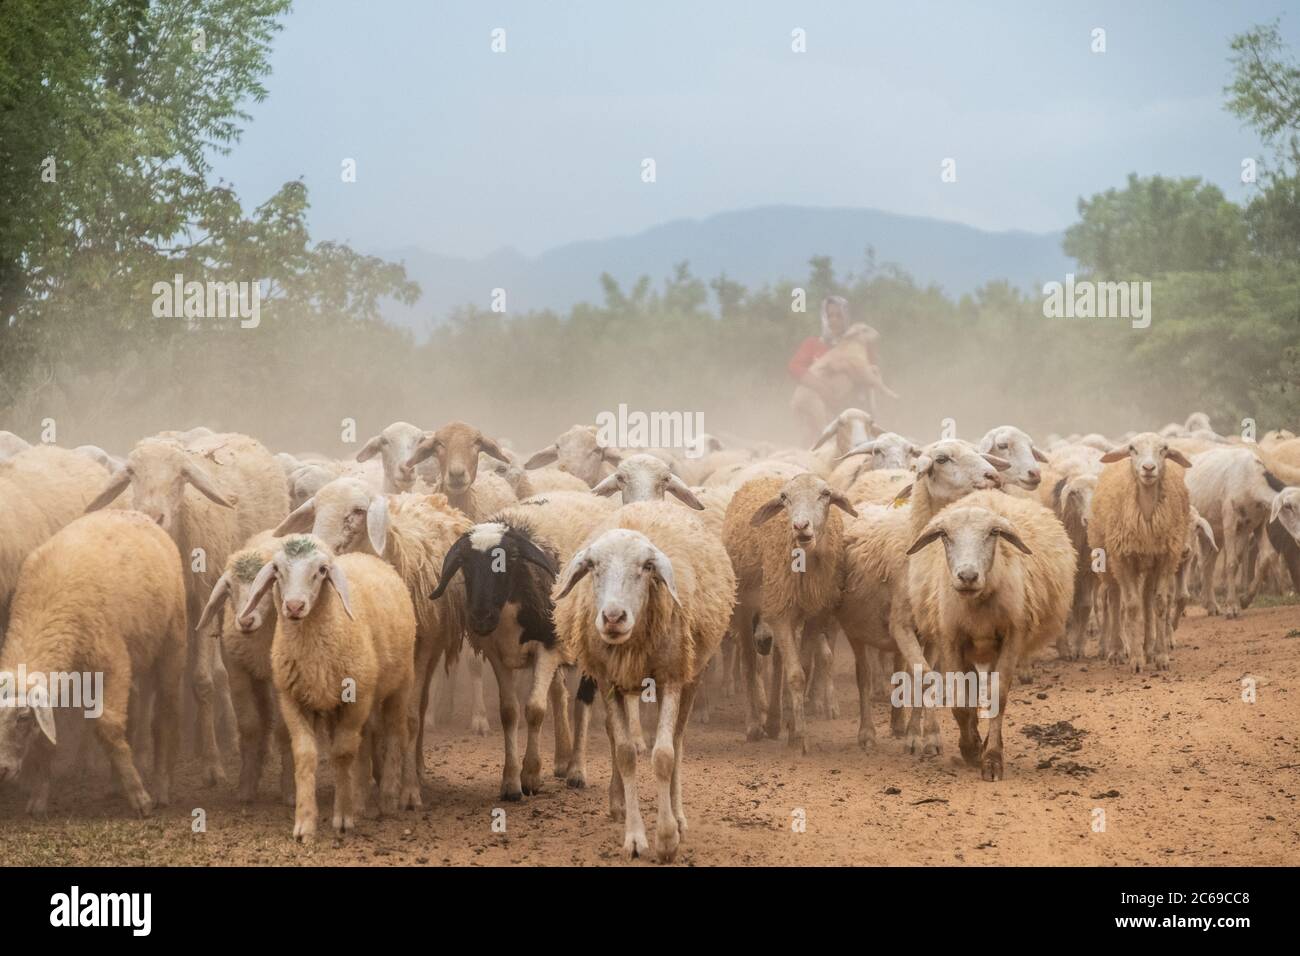 Female shepherd herding sheep, Vietnam Stock Photo